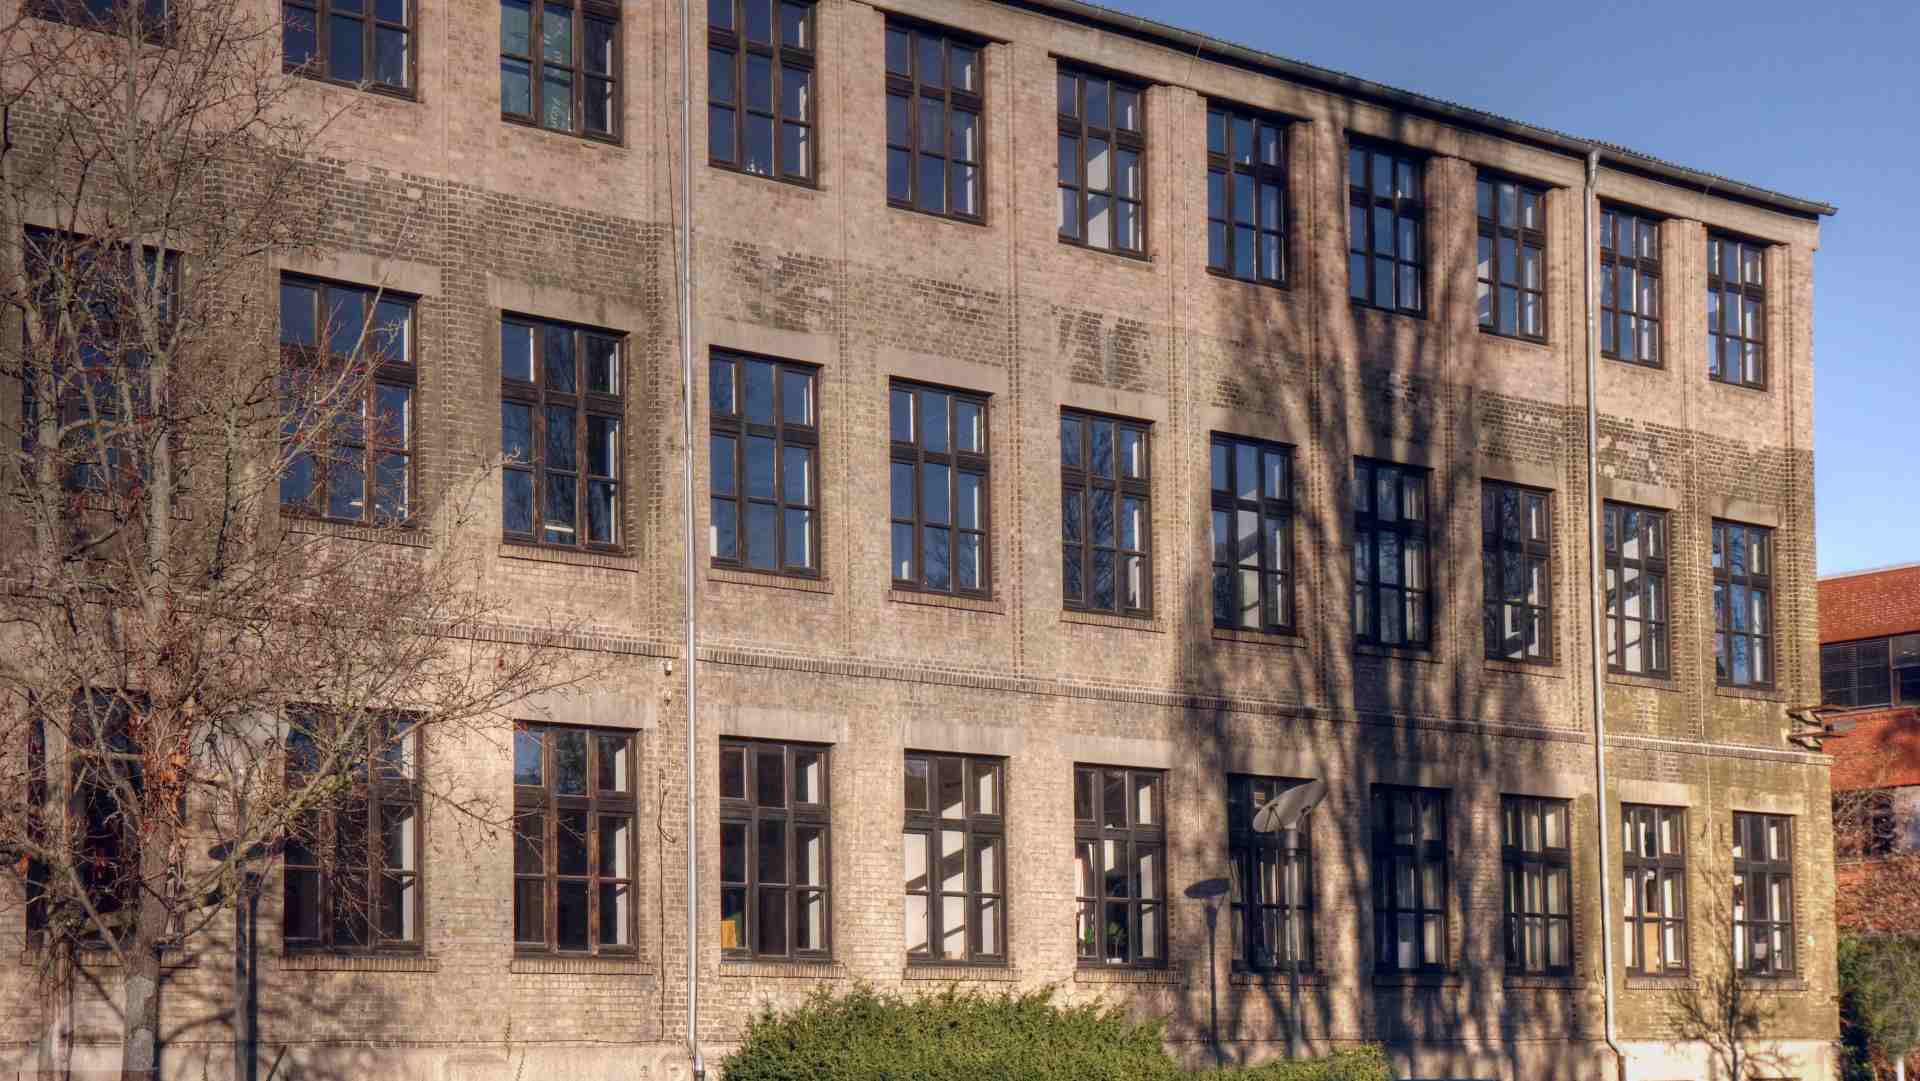 ehemalie Grotian-Steinweg-Piano-Fabrik